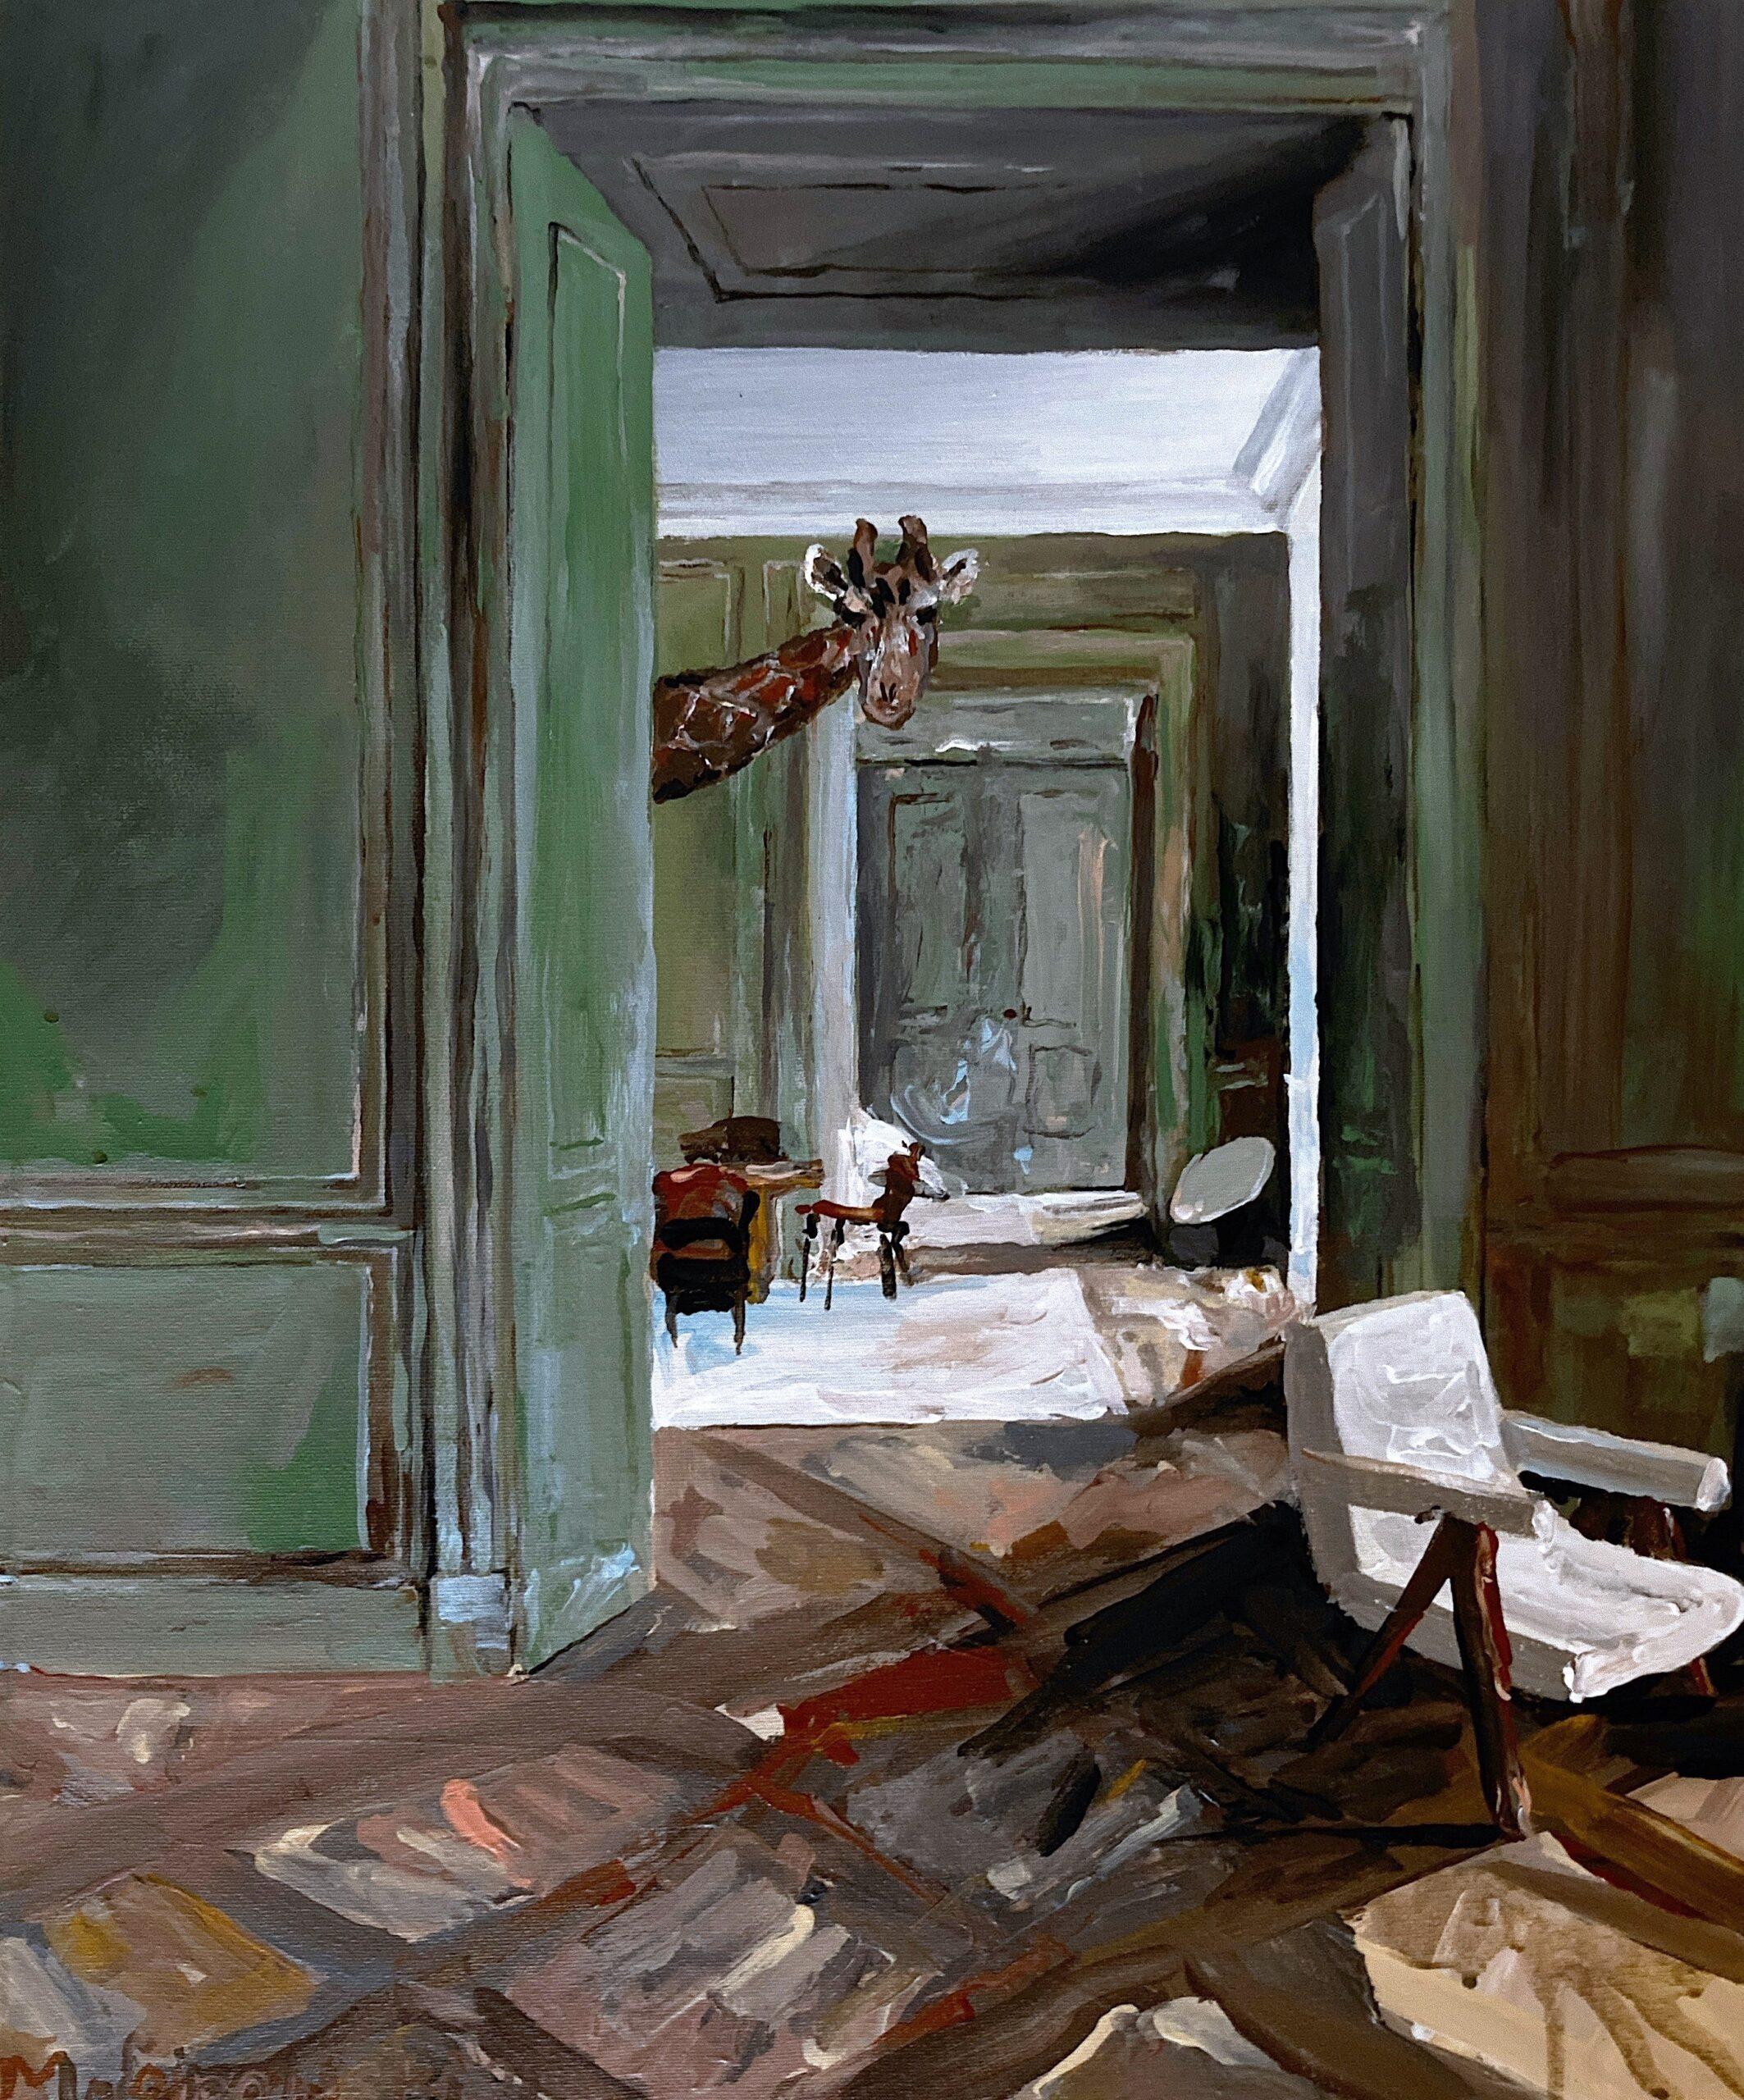 Just Another Eccentric's Home von Martin Wojnowski – Painting von Unknown